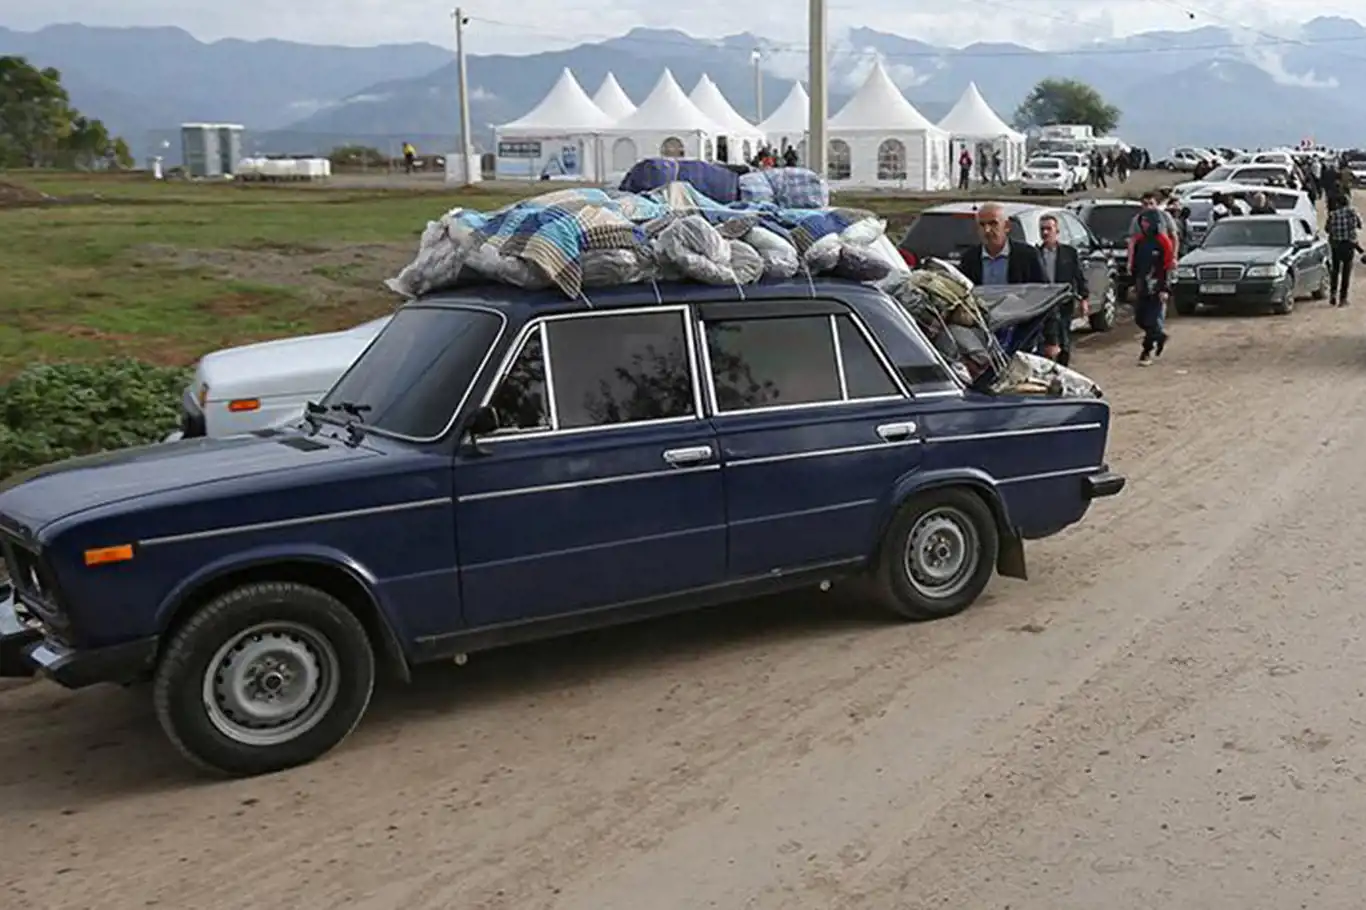 Karabağ’dan 20 binden fazla kişi göç etti